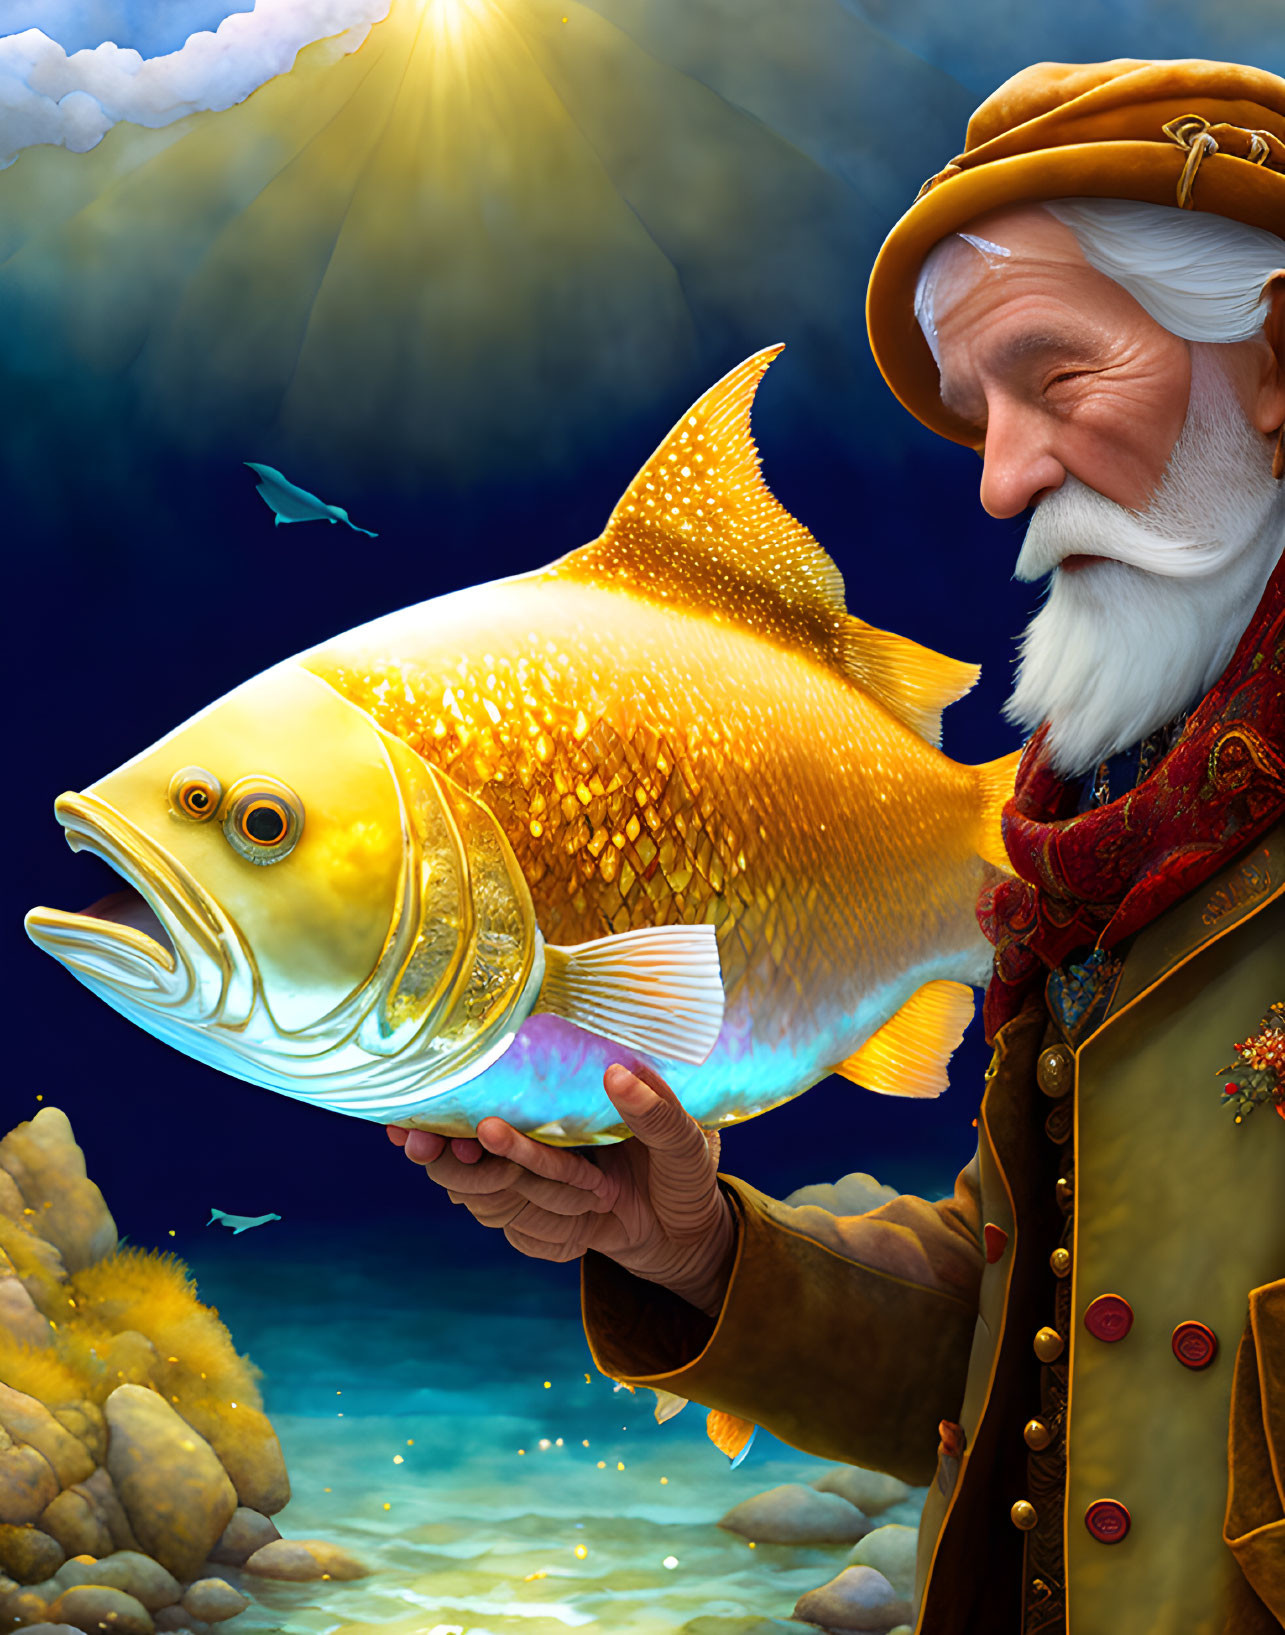 Elder fisherman in beret with large golden fish underwater